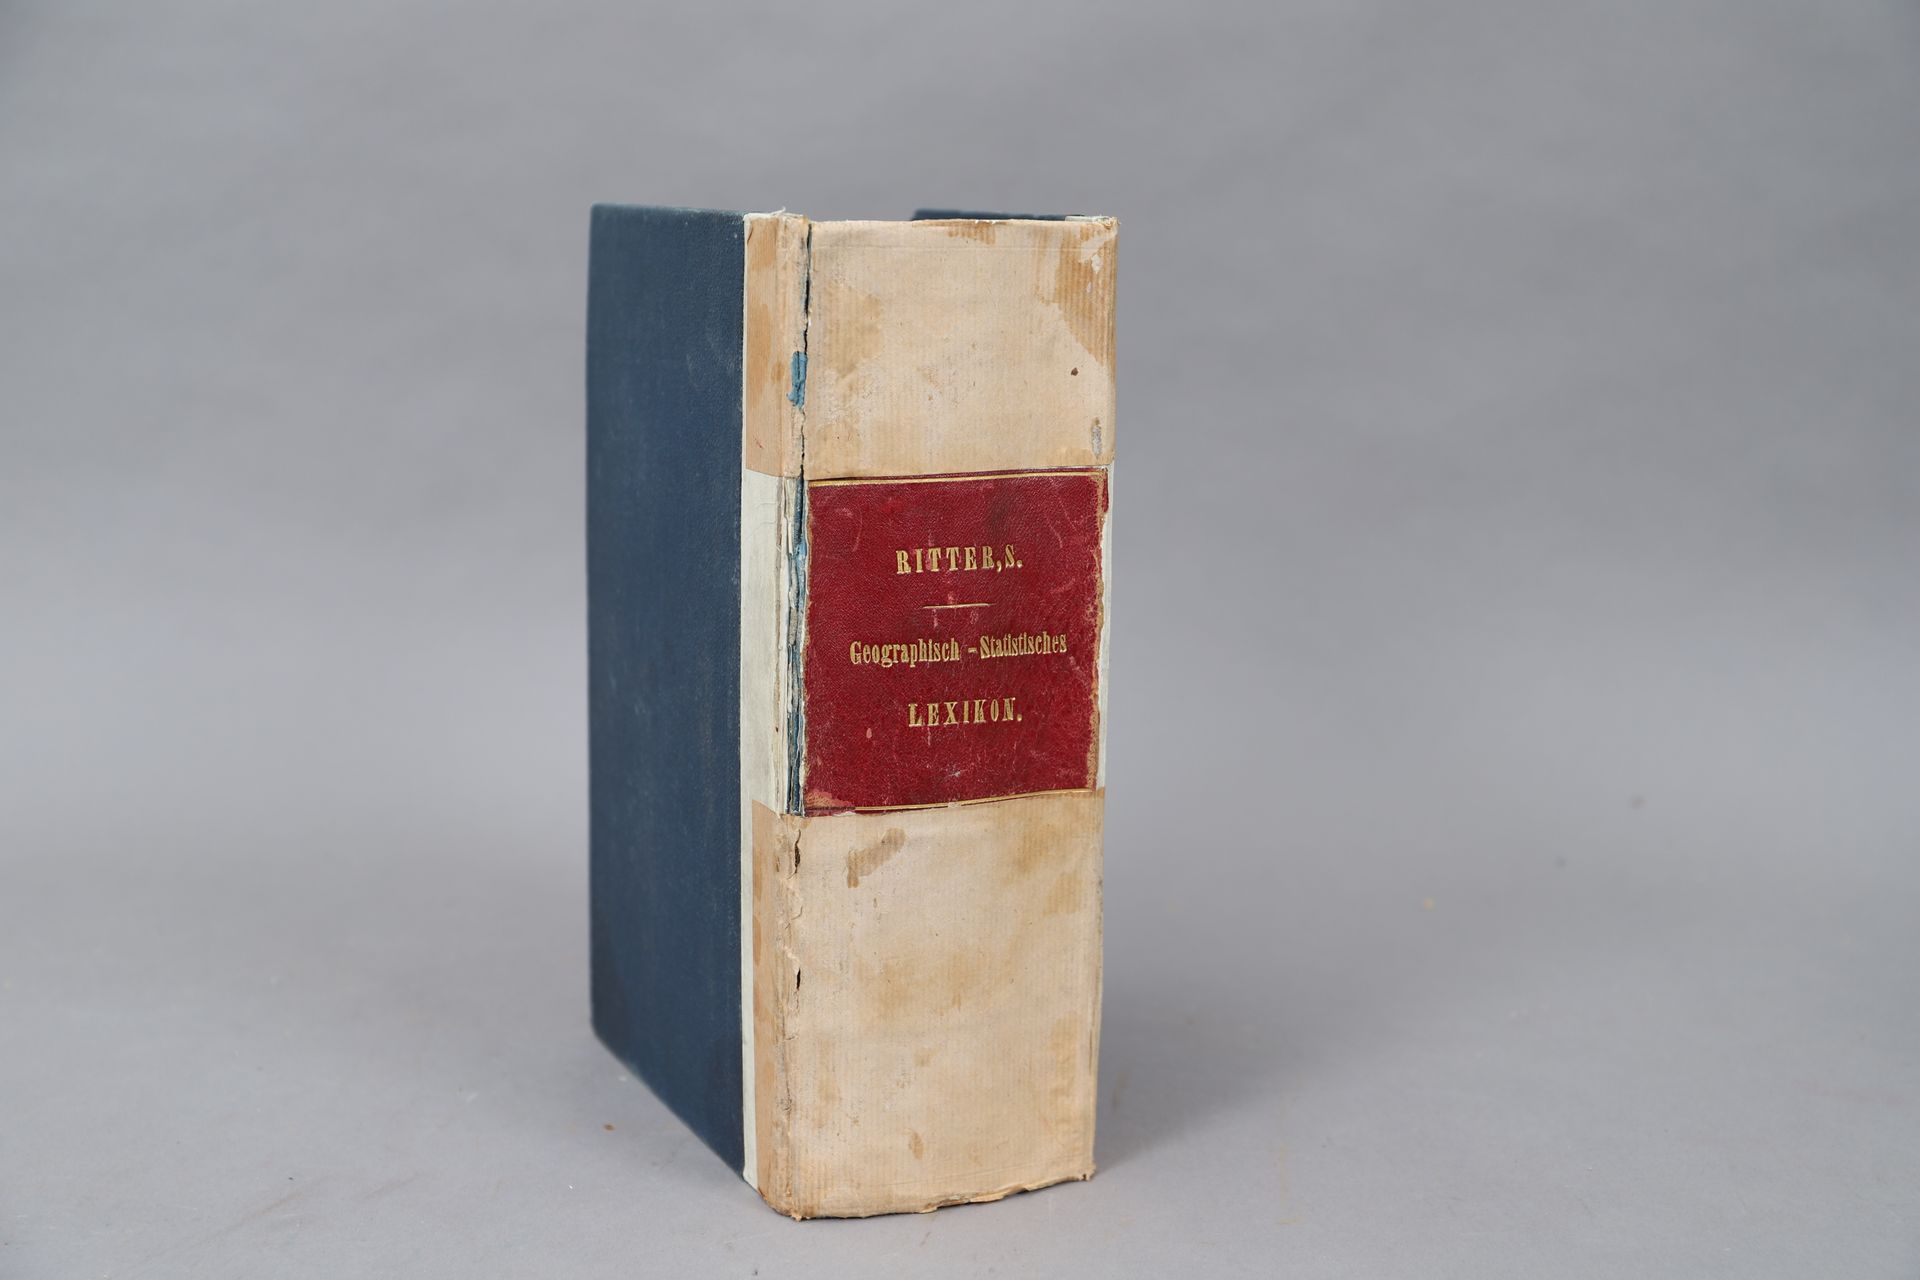 Null RITTER'S - GEOGRAPHISCH LEXICON.

Lipsia 1871. 

Volume rilegato.